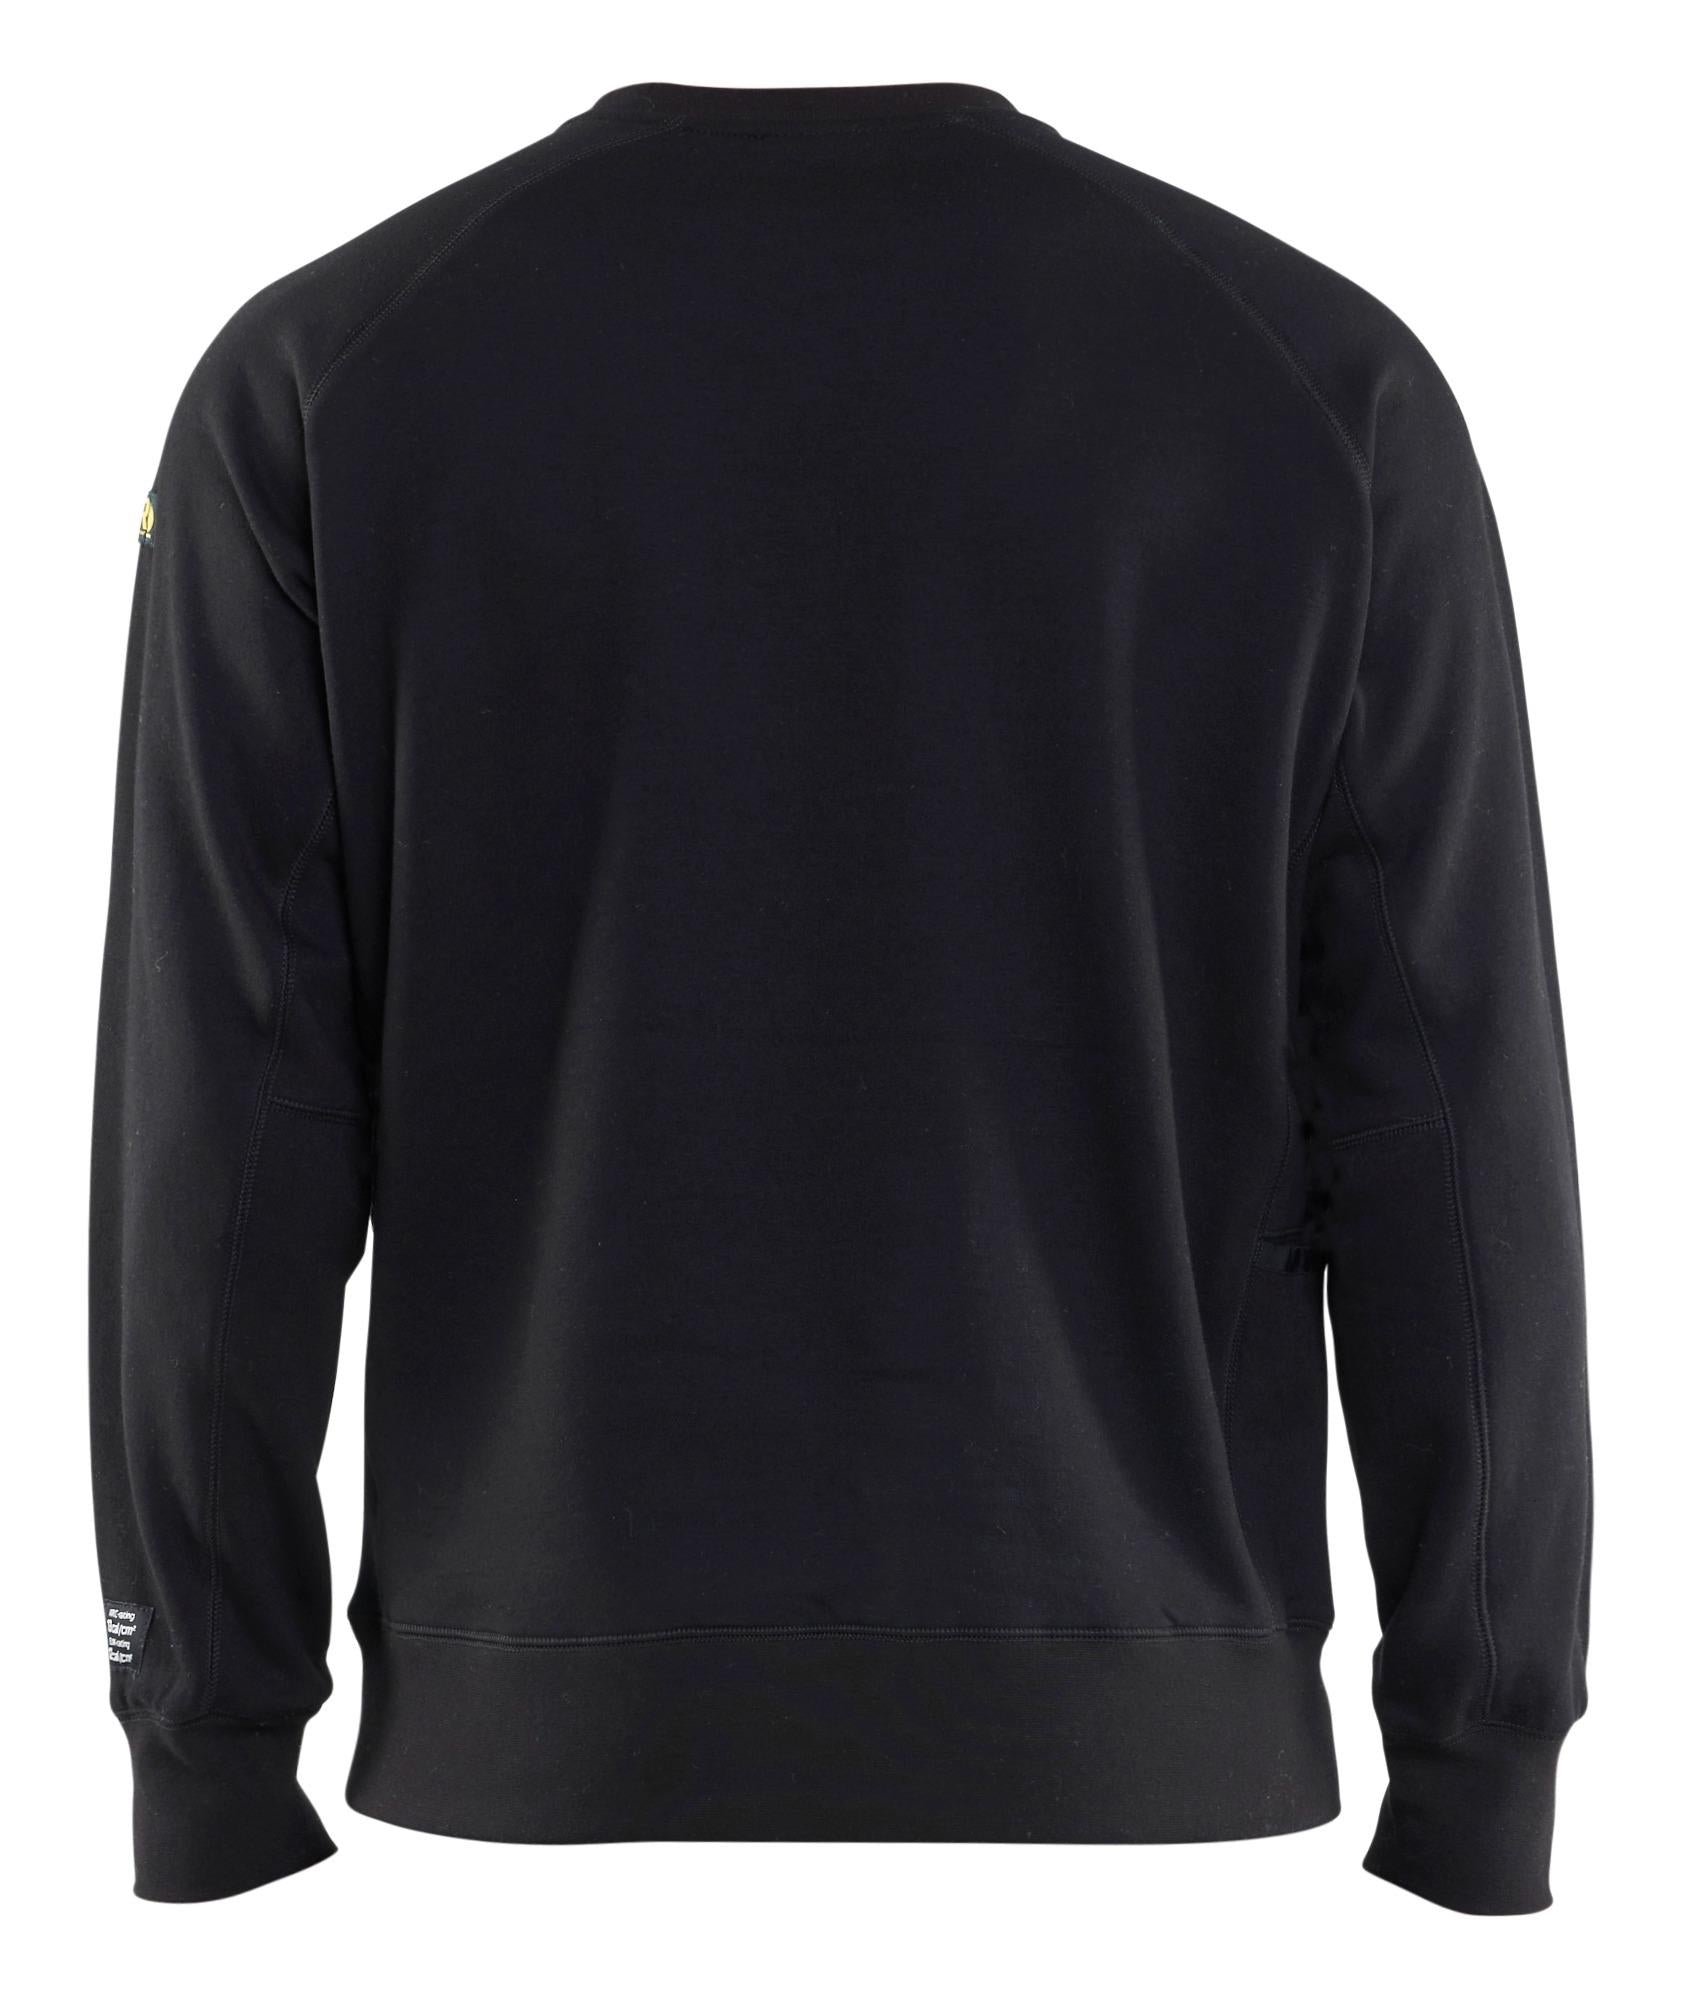 Blaklader black flame-retardant antistatic welders sweatshirt #3477